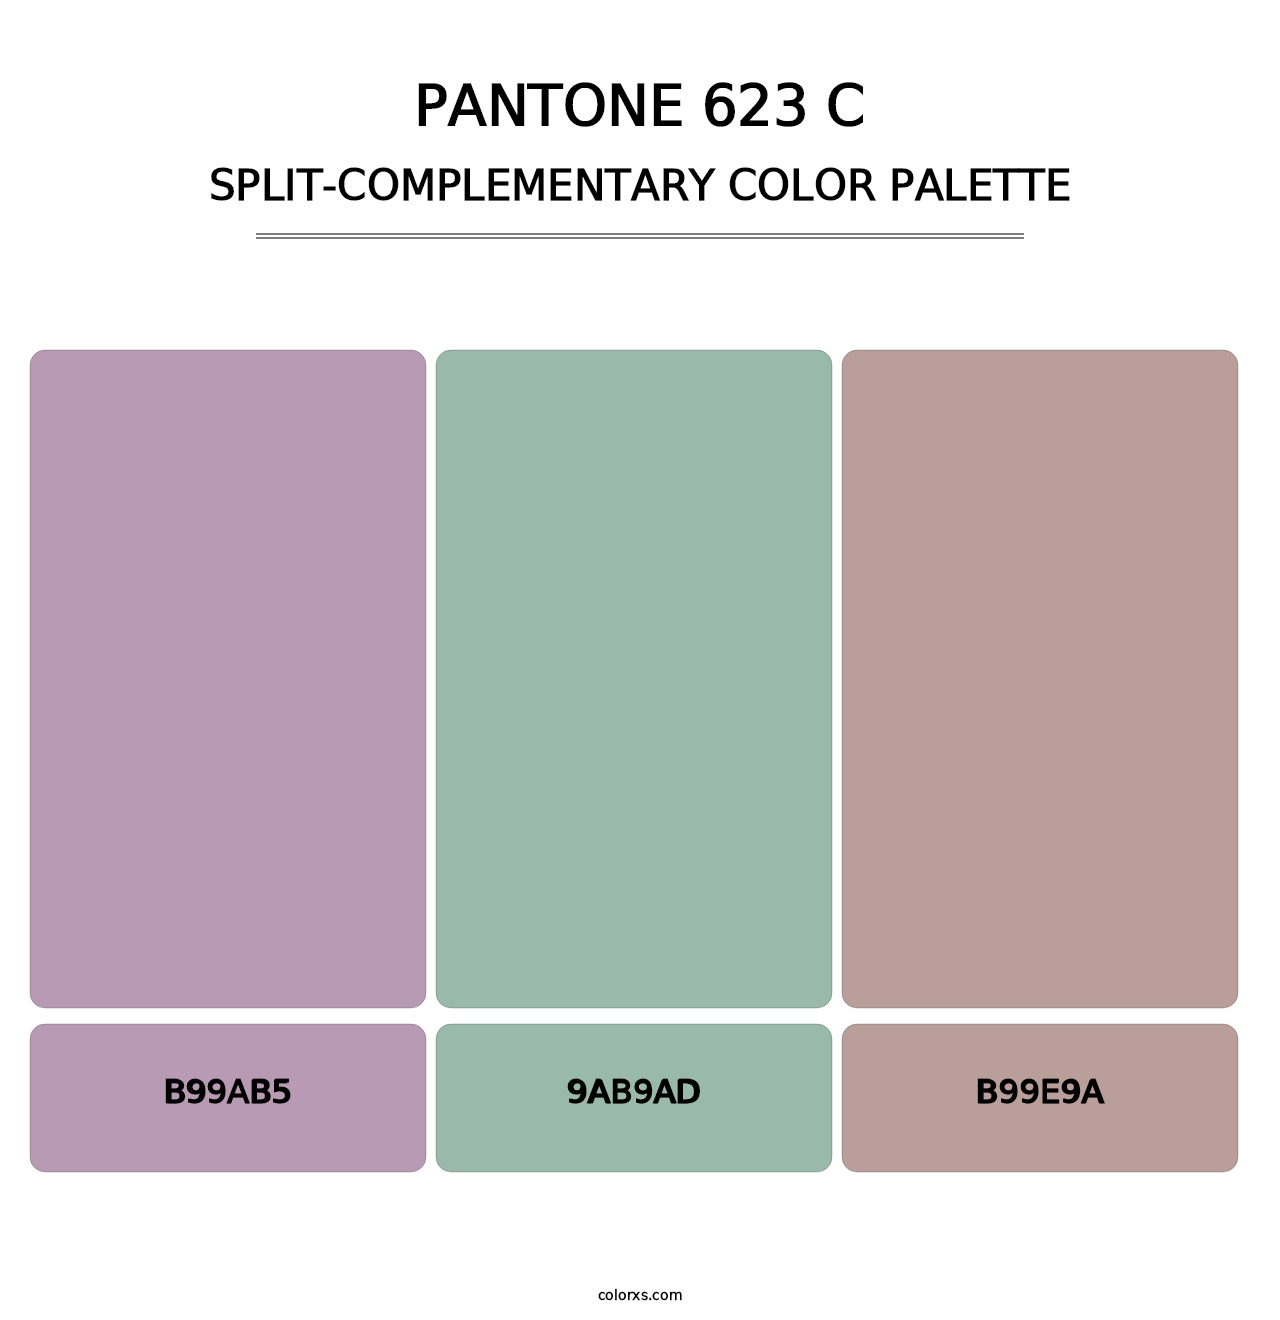 PANTONE 623 C - Split-Complementary Color Palette